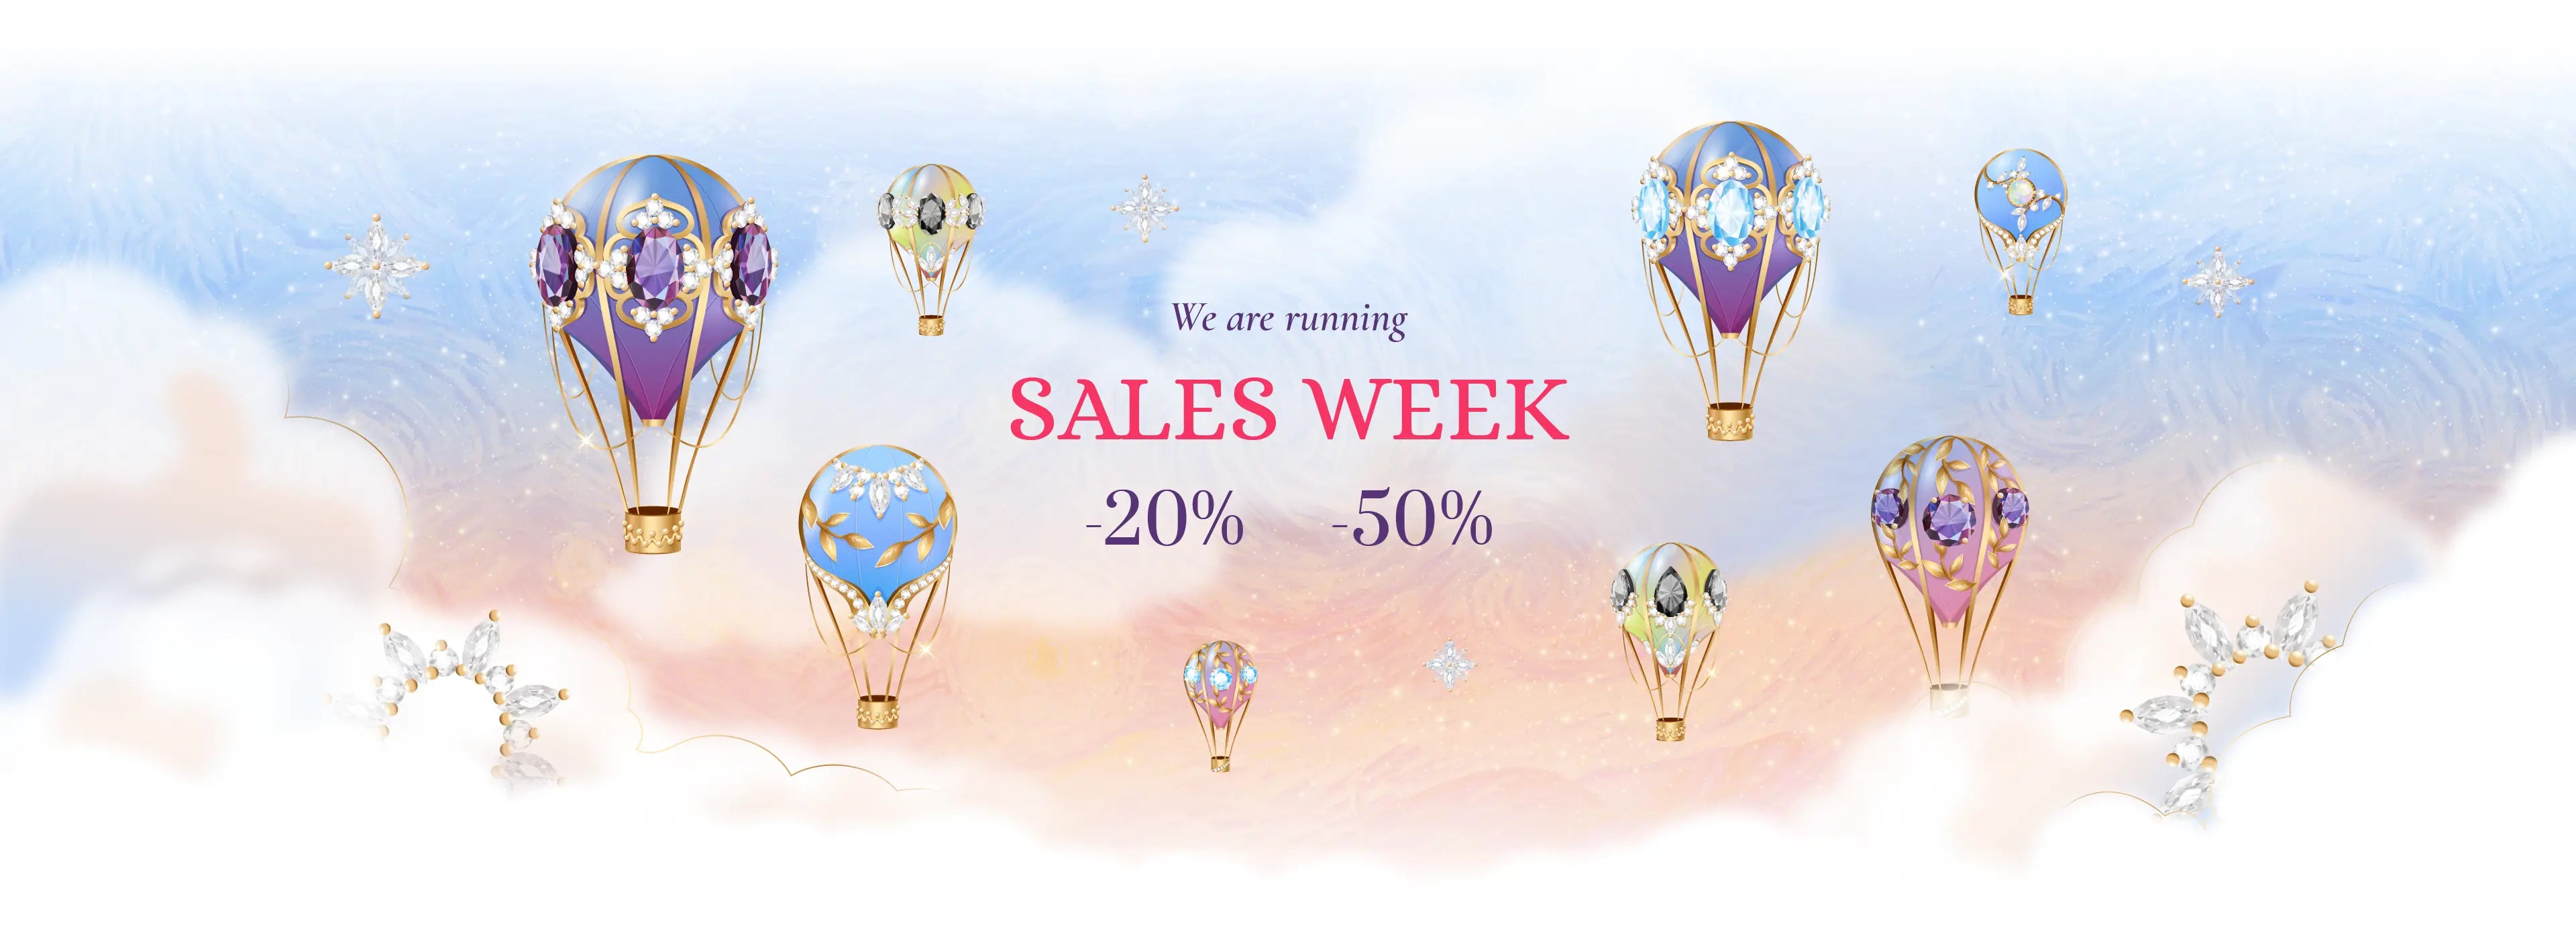 Starry cradles sales week banner